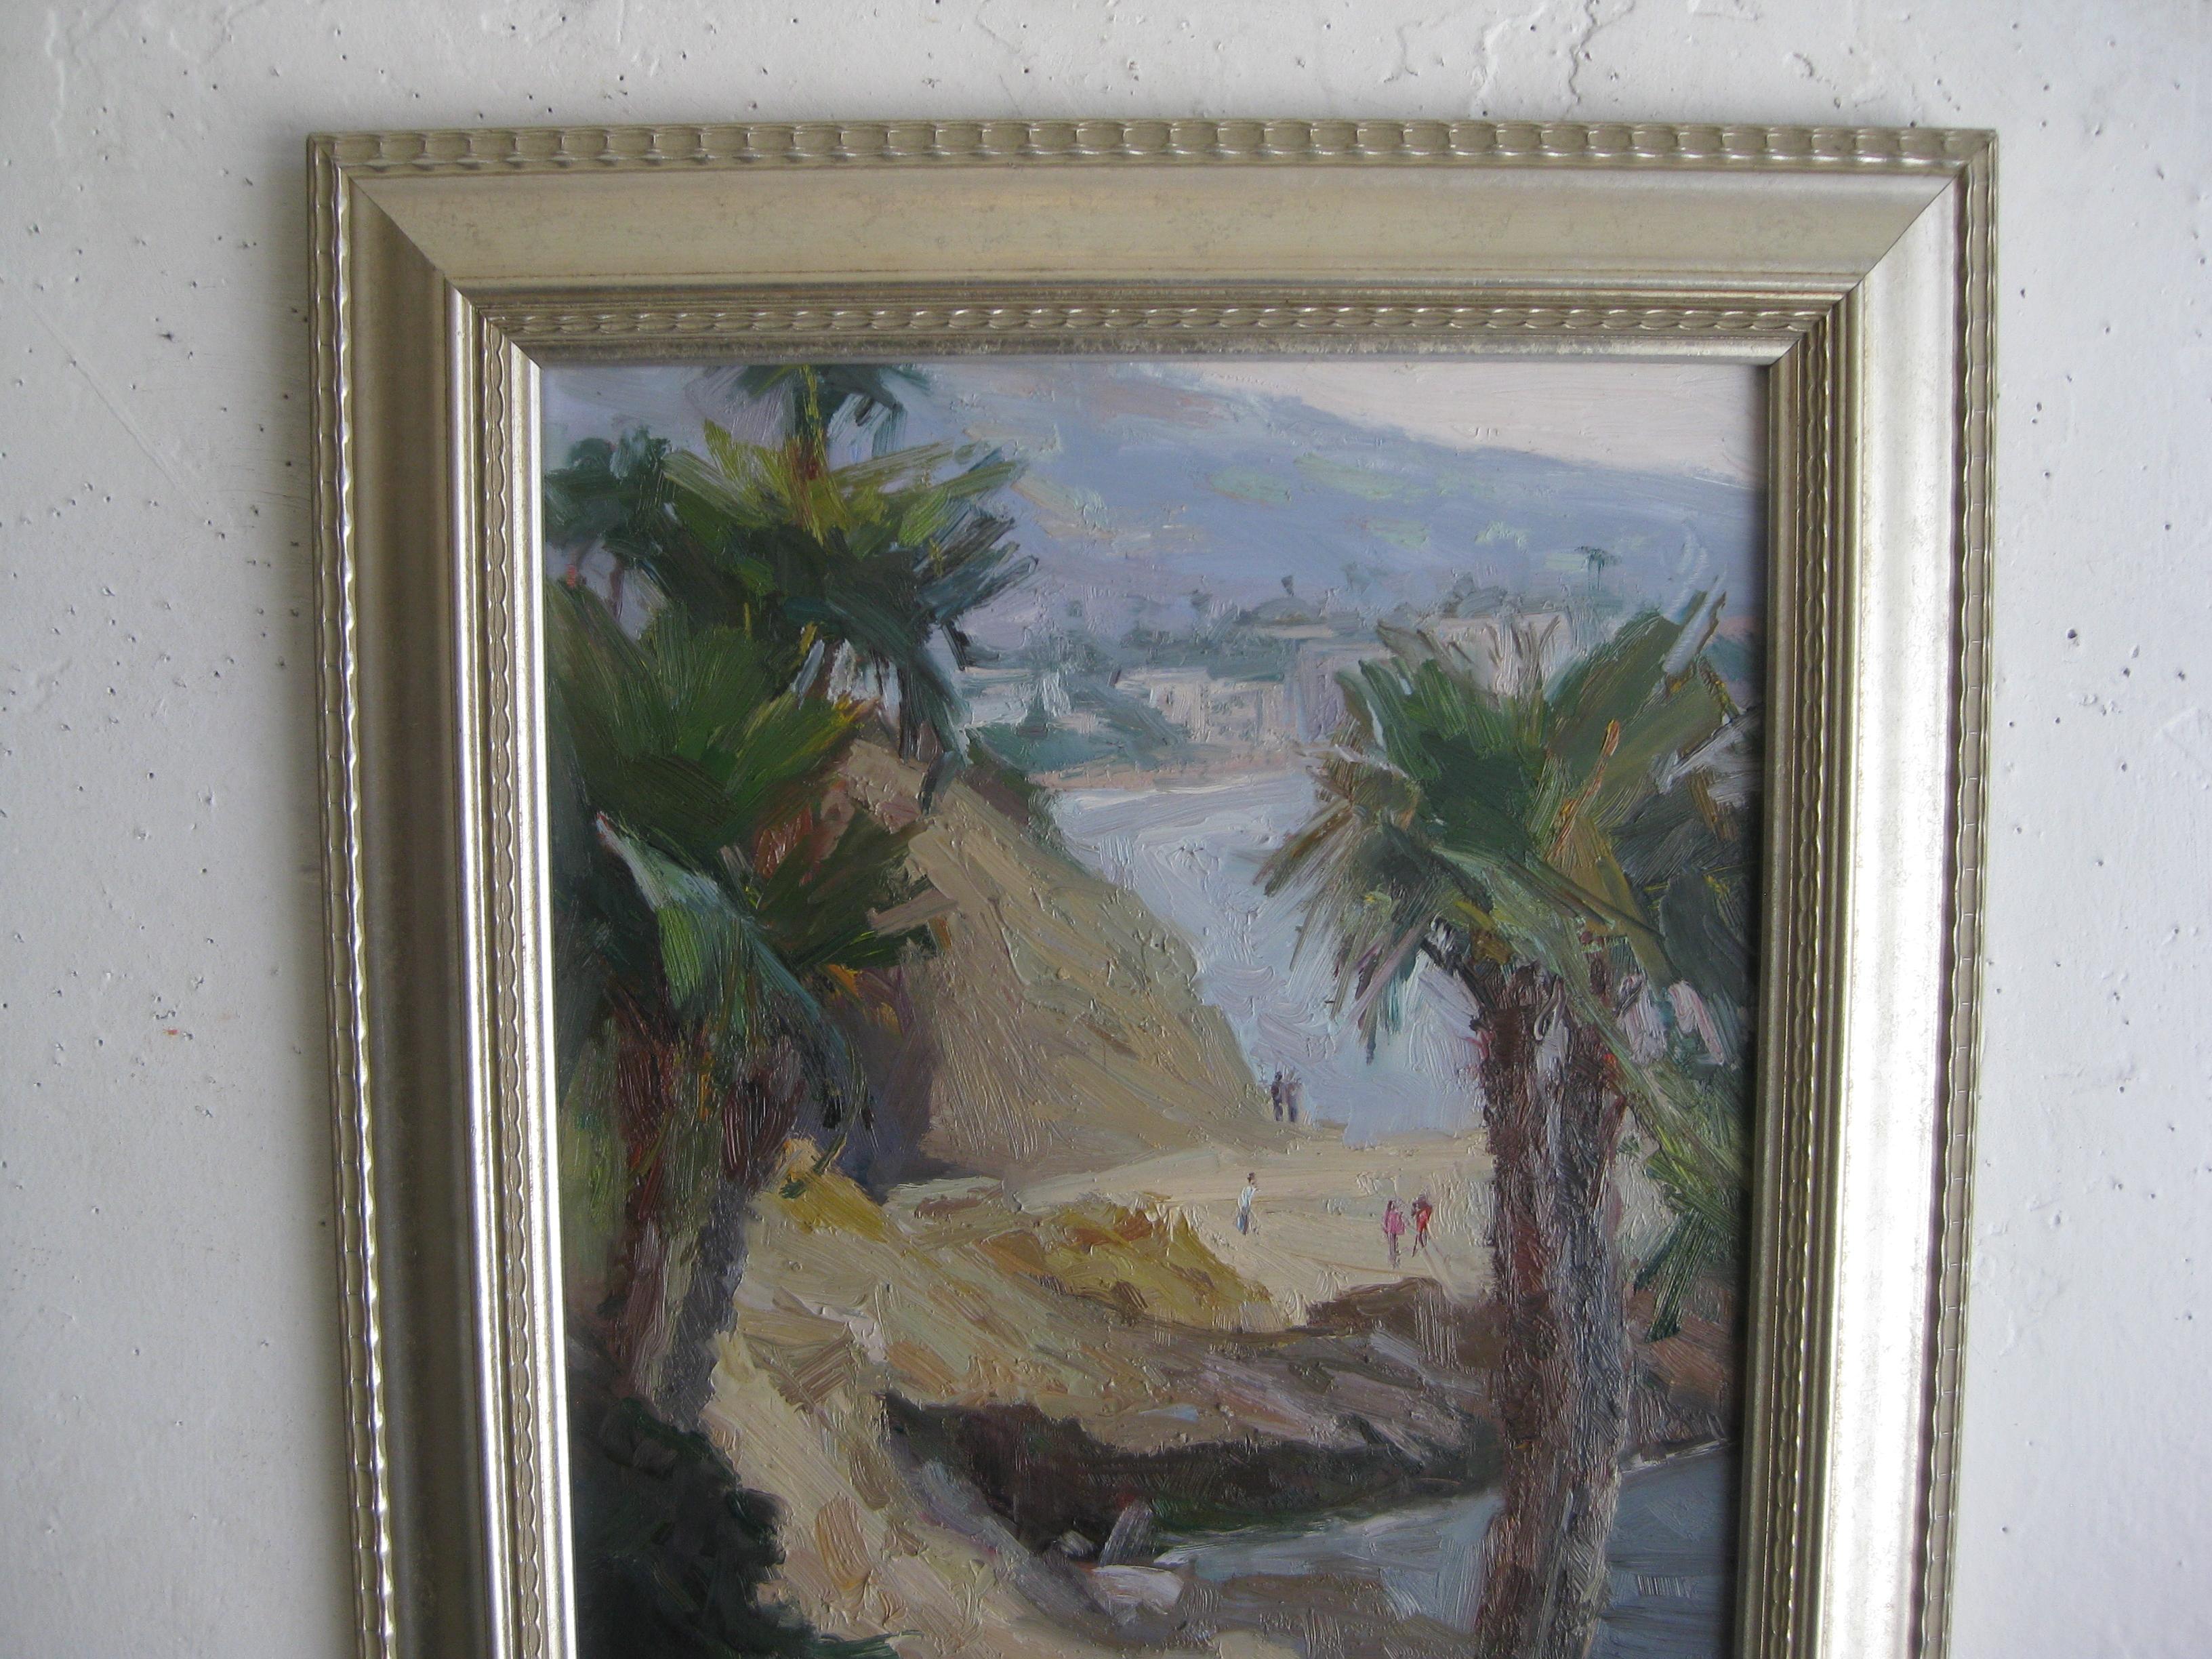 Hervorragendes impressionistisches Ölgemälde einer kalifornischen Künstlerin namens Jeanette Le Grue. Das Bild zeigt einen Strandweg mit einer Stadt im Hintergrund. Möglicherweise Santa Barbara? Signiert in der unteren Ecke. Das Ölgemälde ist auf